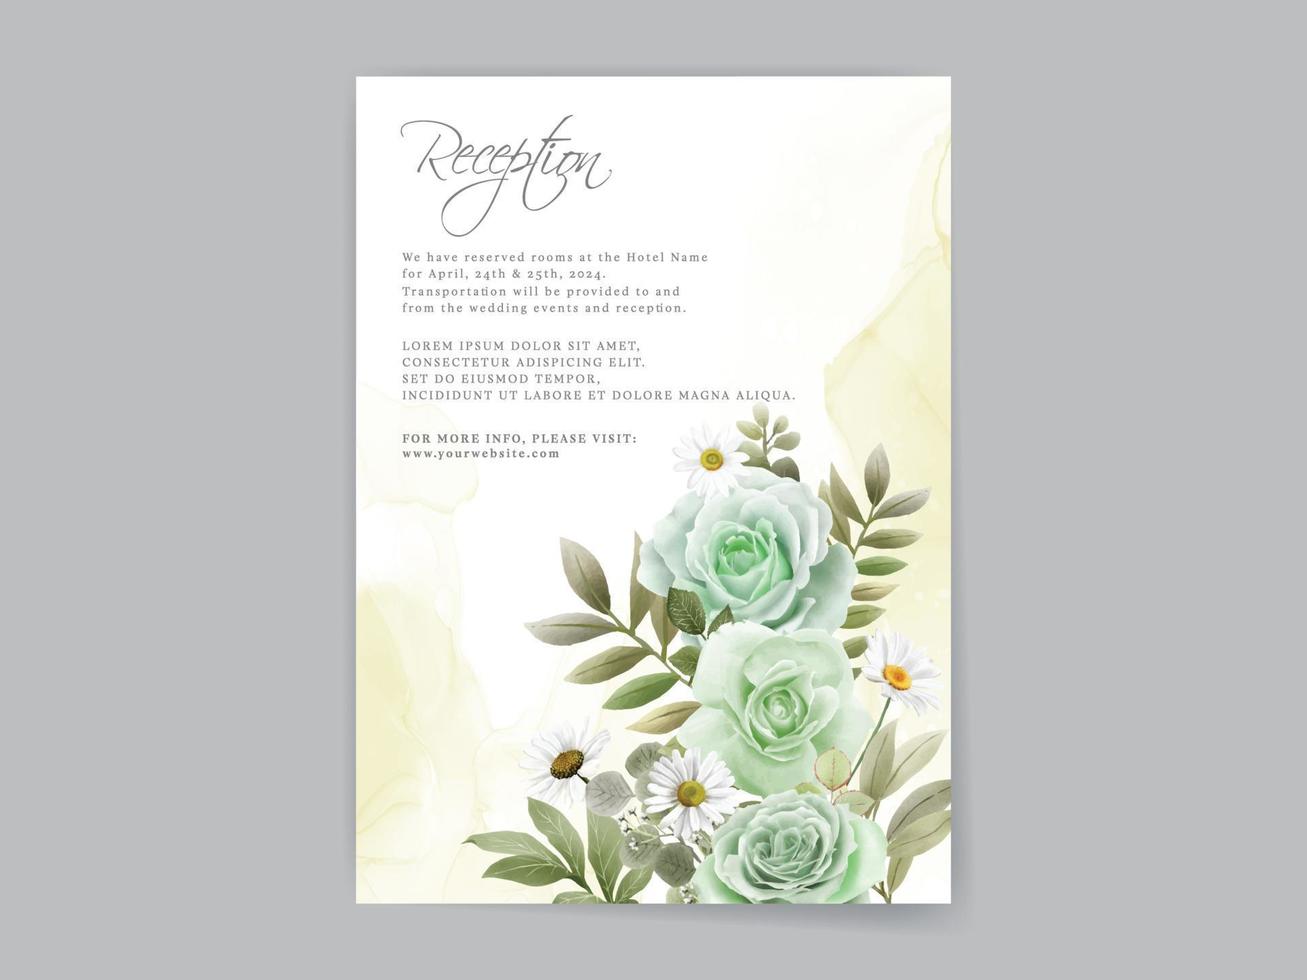 carta di invito a nozze con rose verdi disegnate a mano vettore